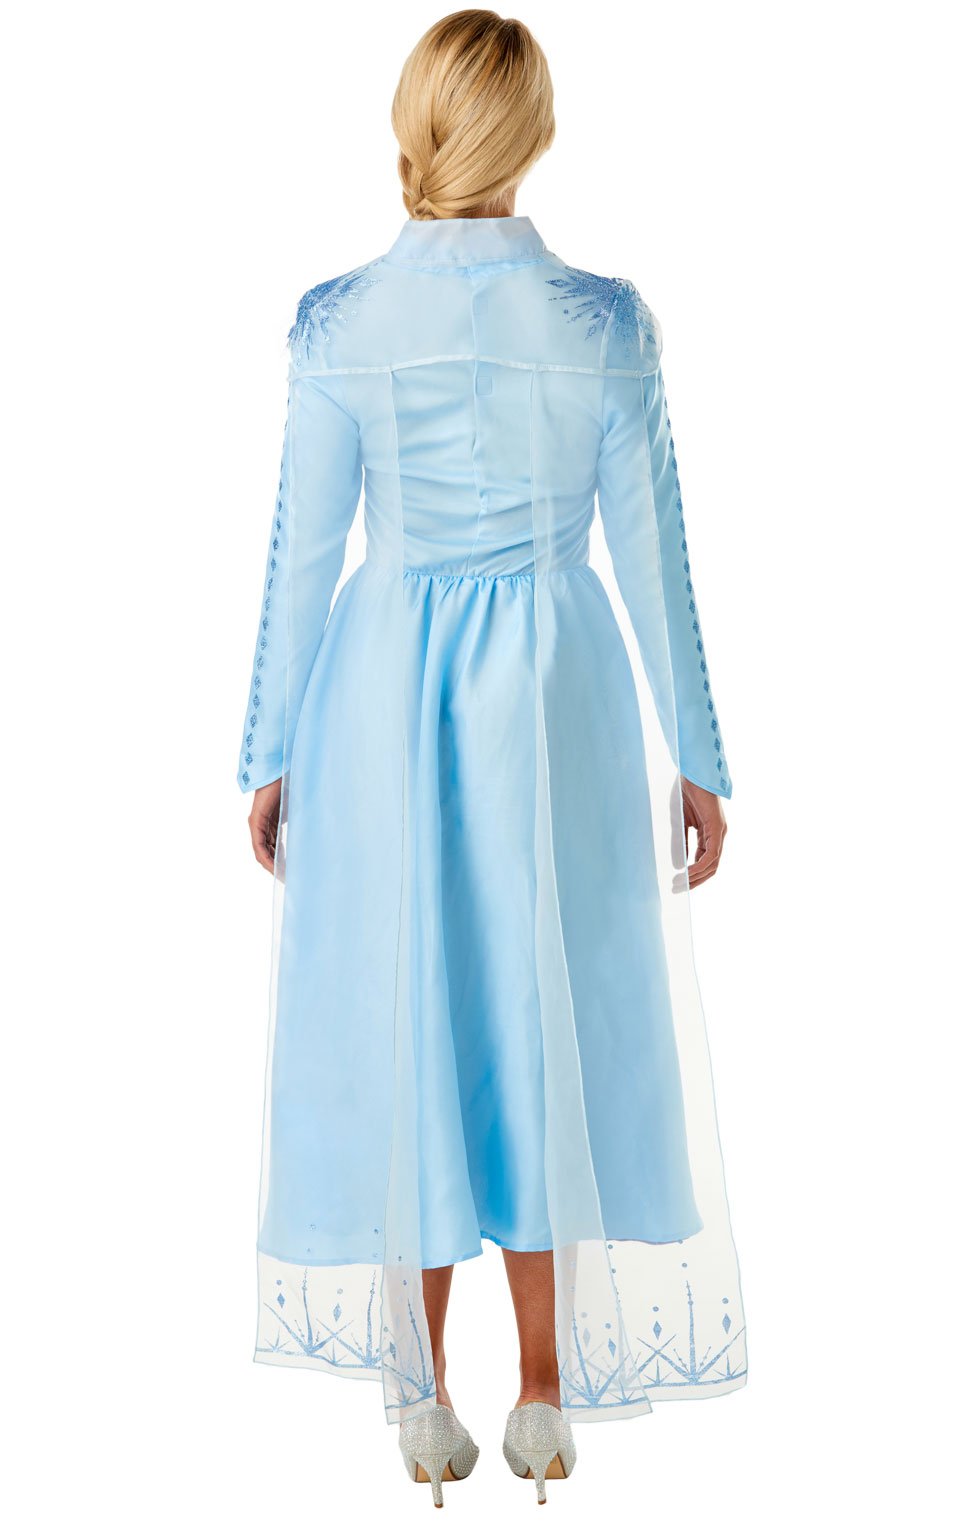 Deluxe Disney Frozen 2 Adult Elsa Costume